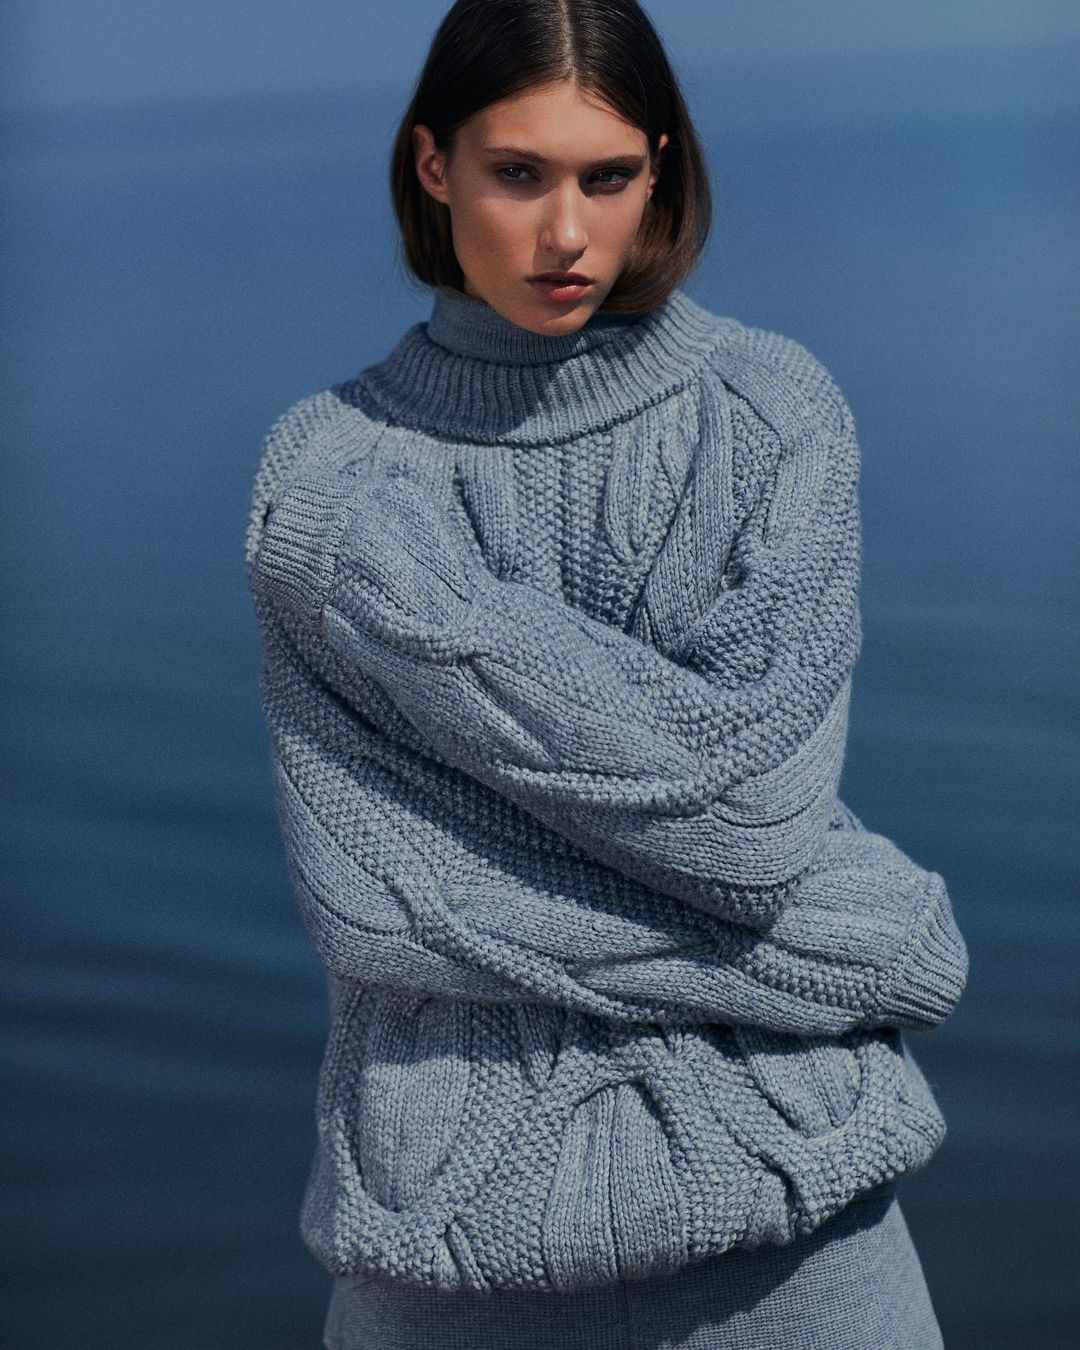 модный свитер осень зима 2021 2022 косы объем украинский бренд синий голубой серый